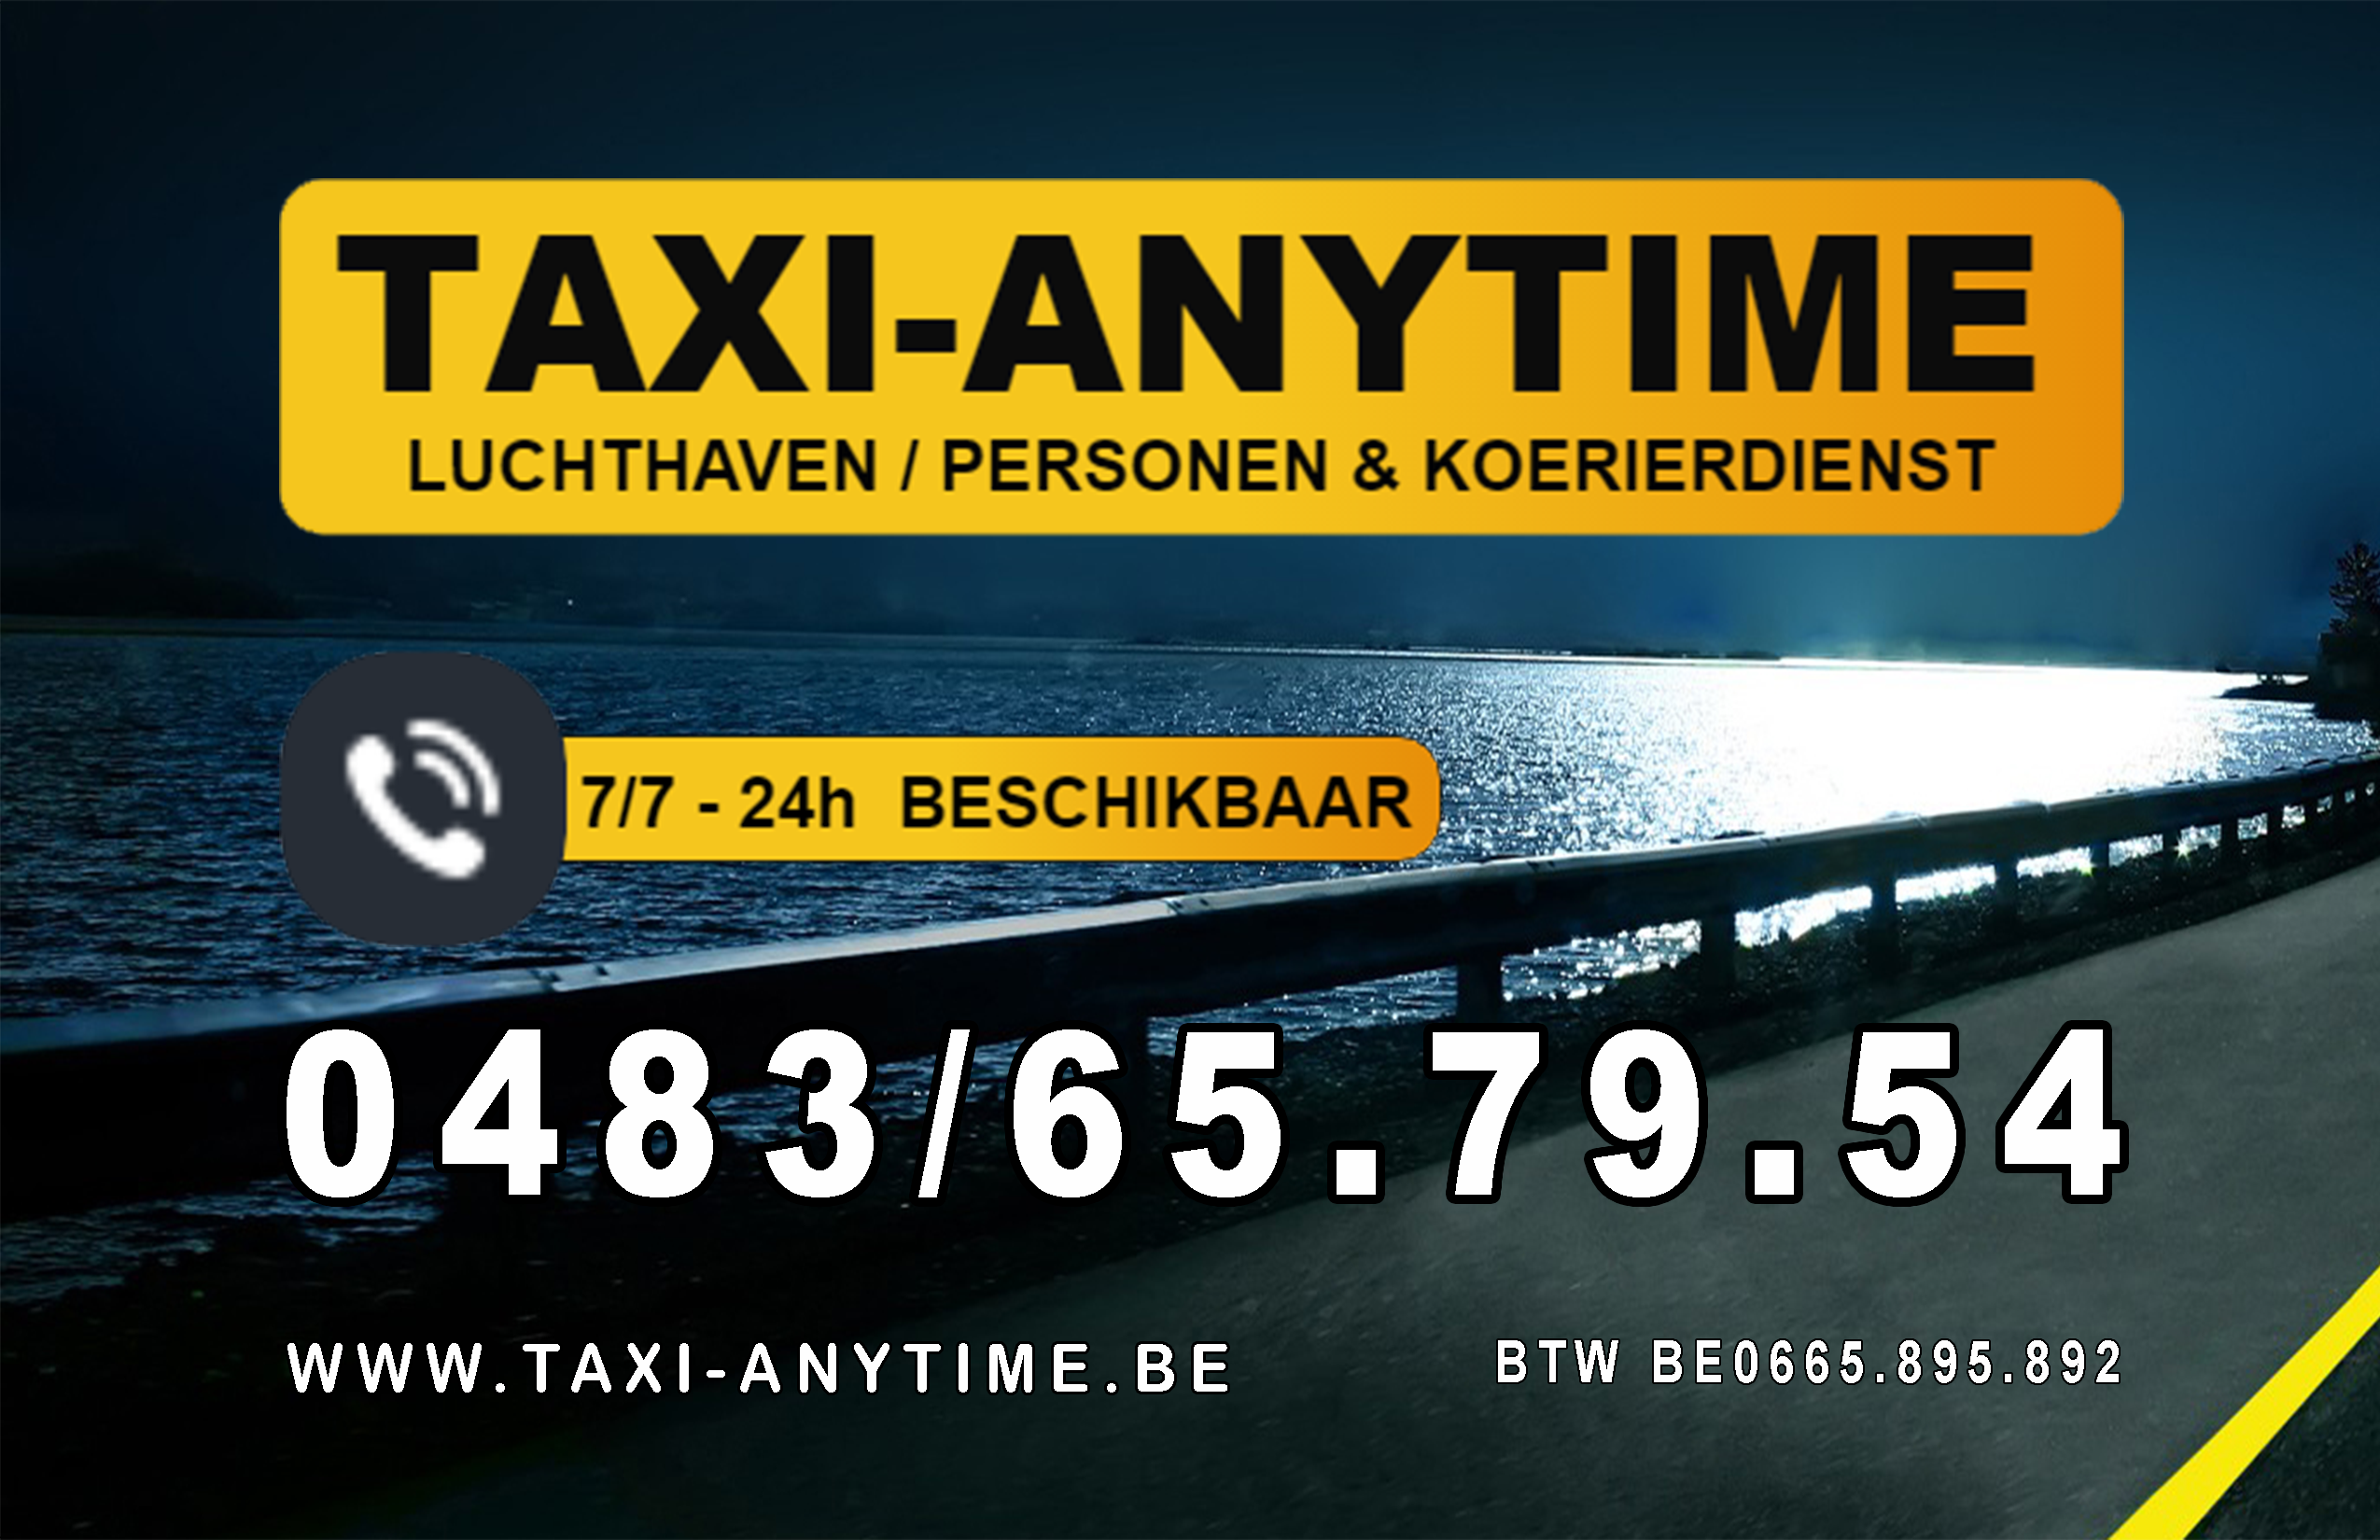 taxibedrijven met luchthavenvervoer Beverlo Taxi-anytime